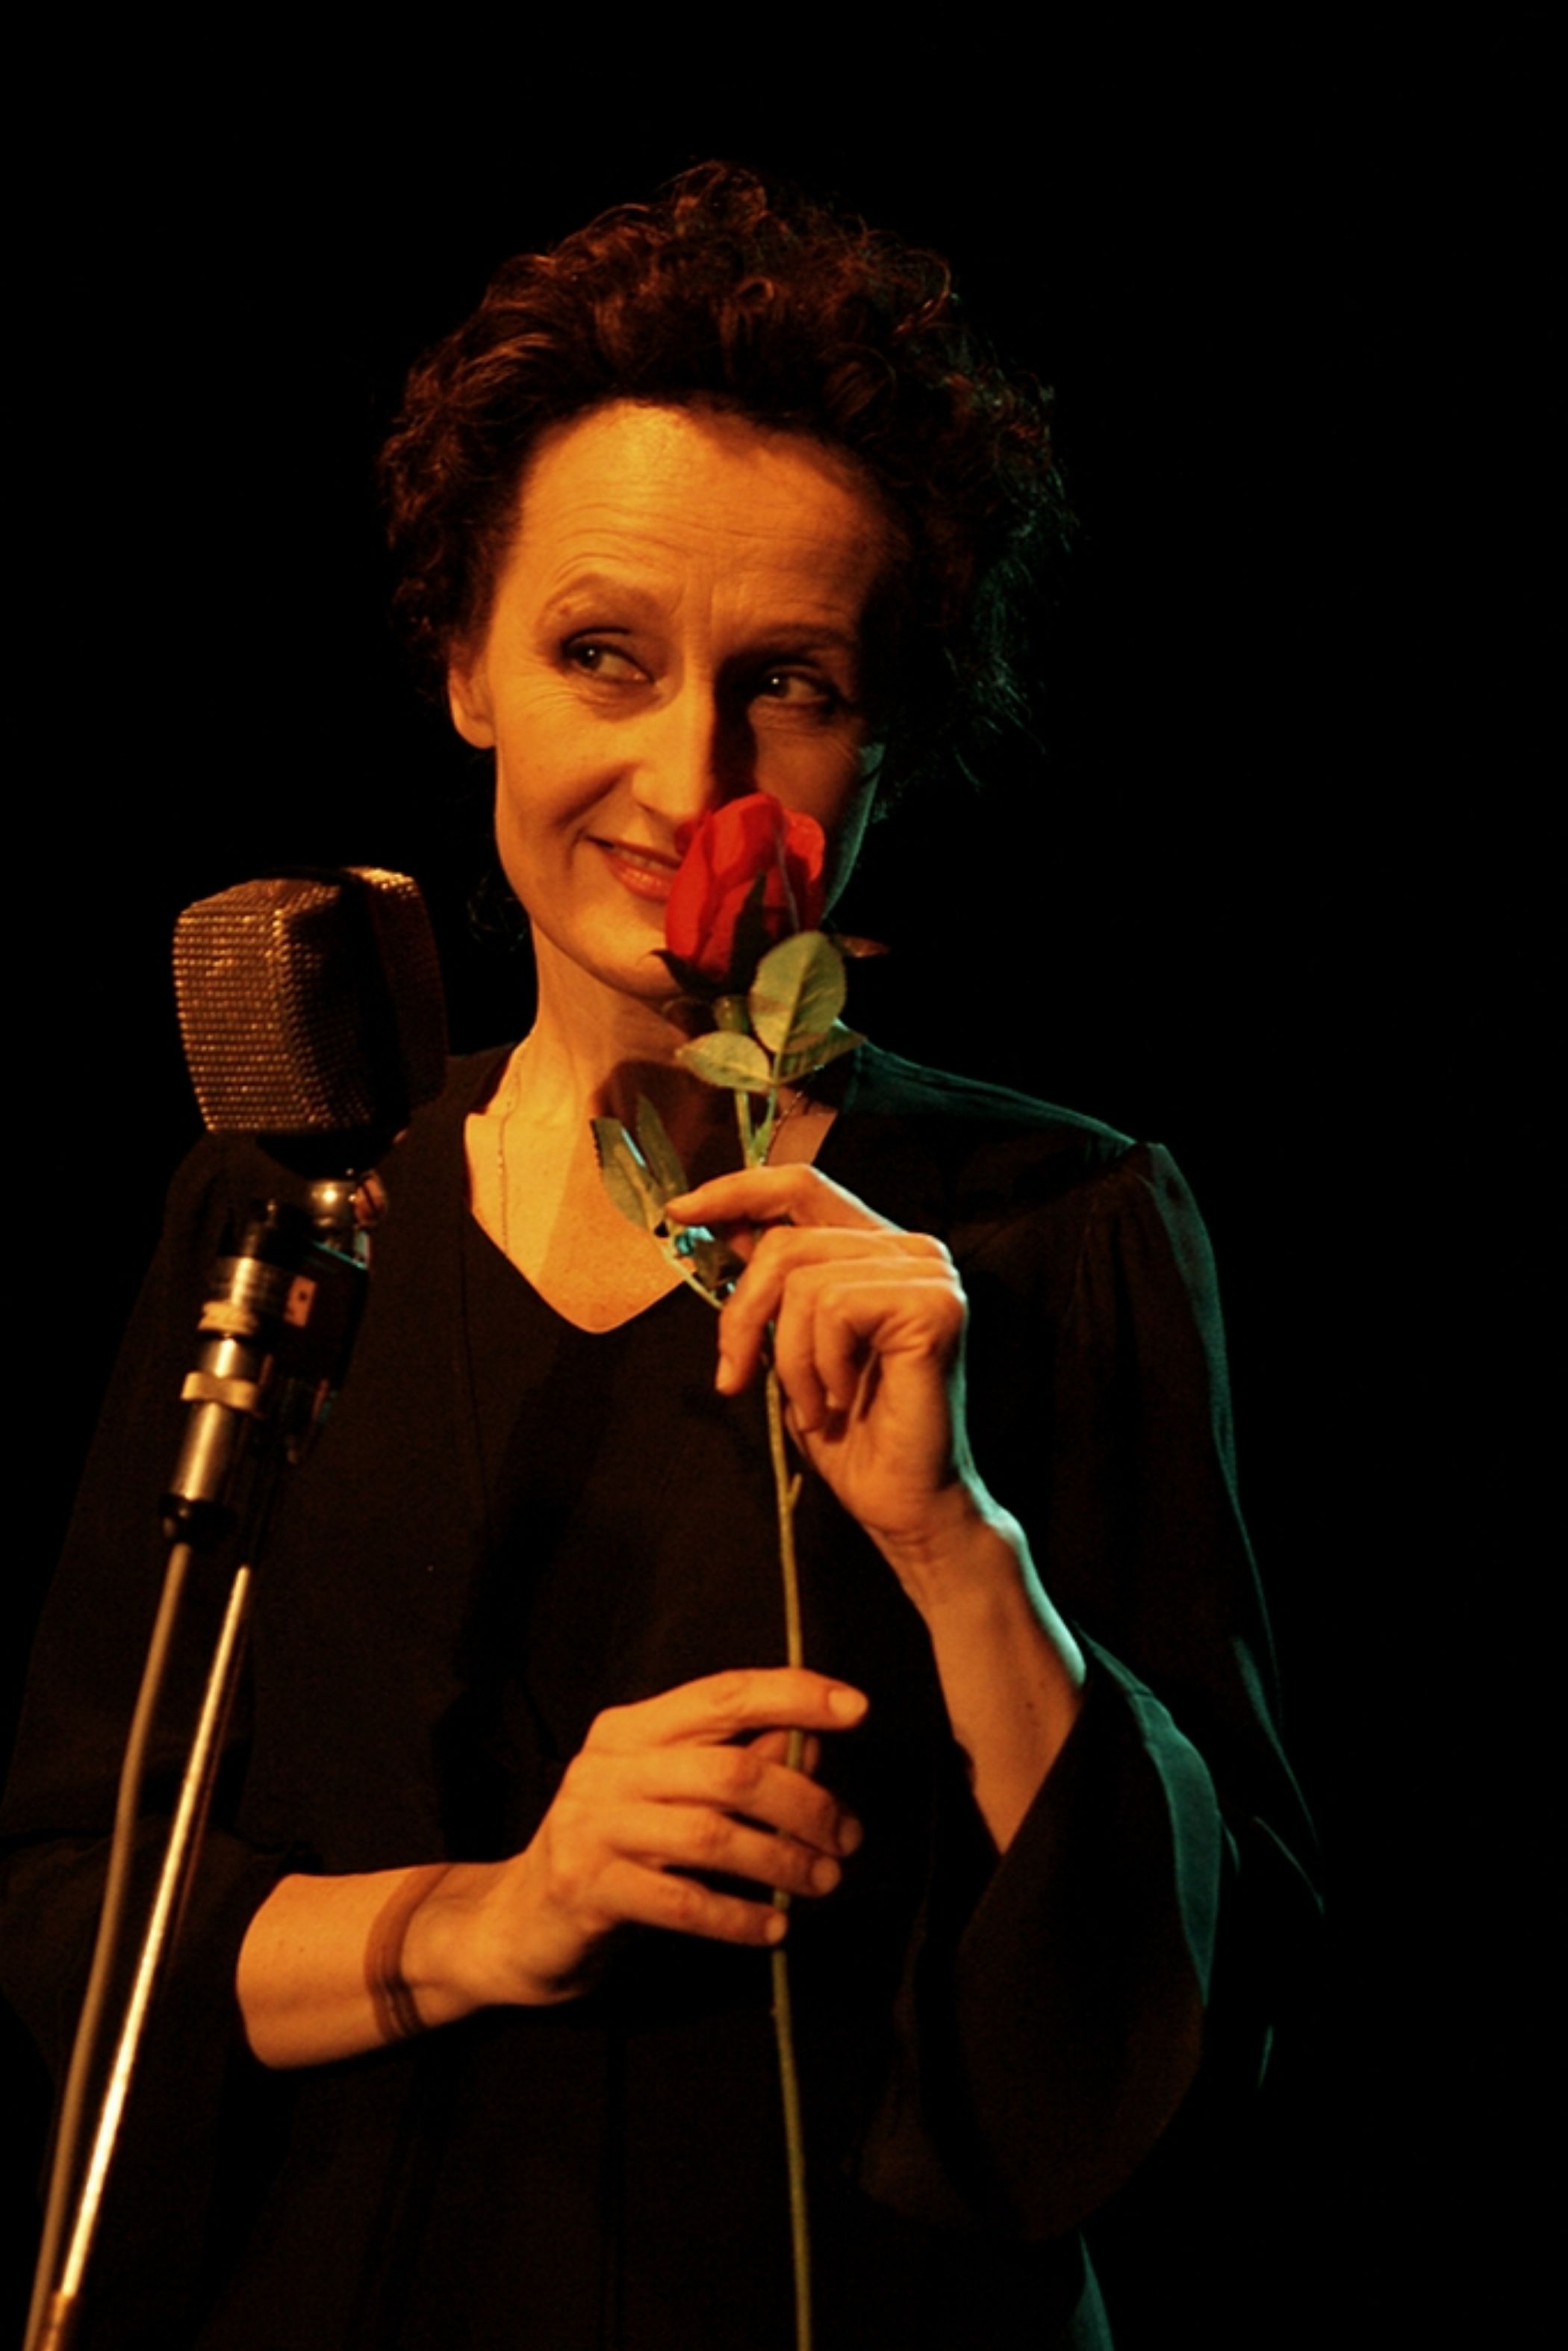 Spektakl Ja, Edith Piaf (zdjęcie pochodzi z materiałów udostępnionych przez organizatora)